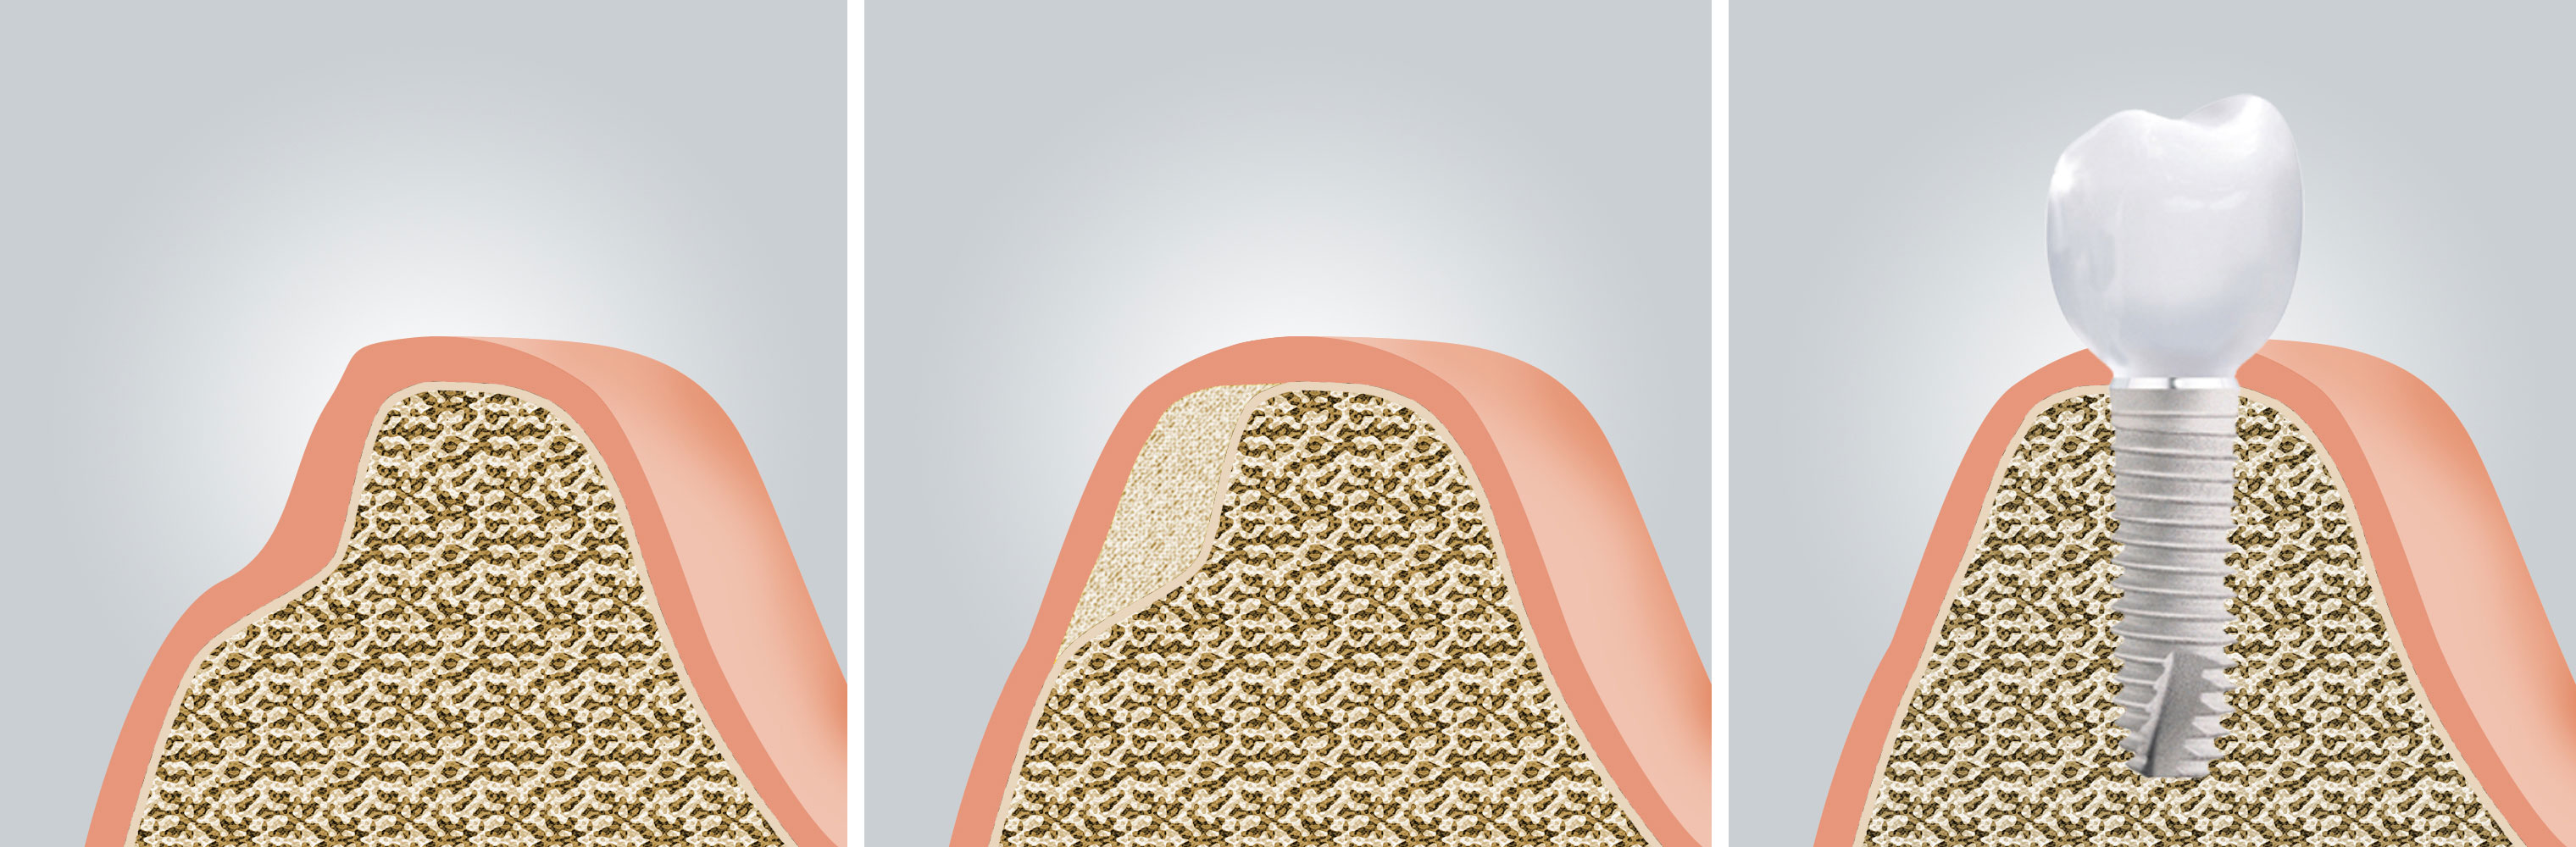 Für eine Implantation muss ausreichend Knochenvolumen vorhanden sein. Auch Patienten, die nach langer Zahnlosigkeit Knochen verloren haben, kann geholfen werden.